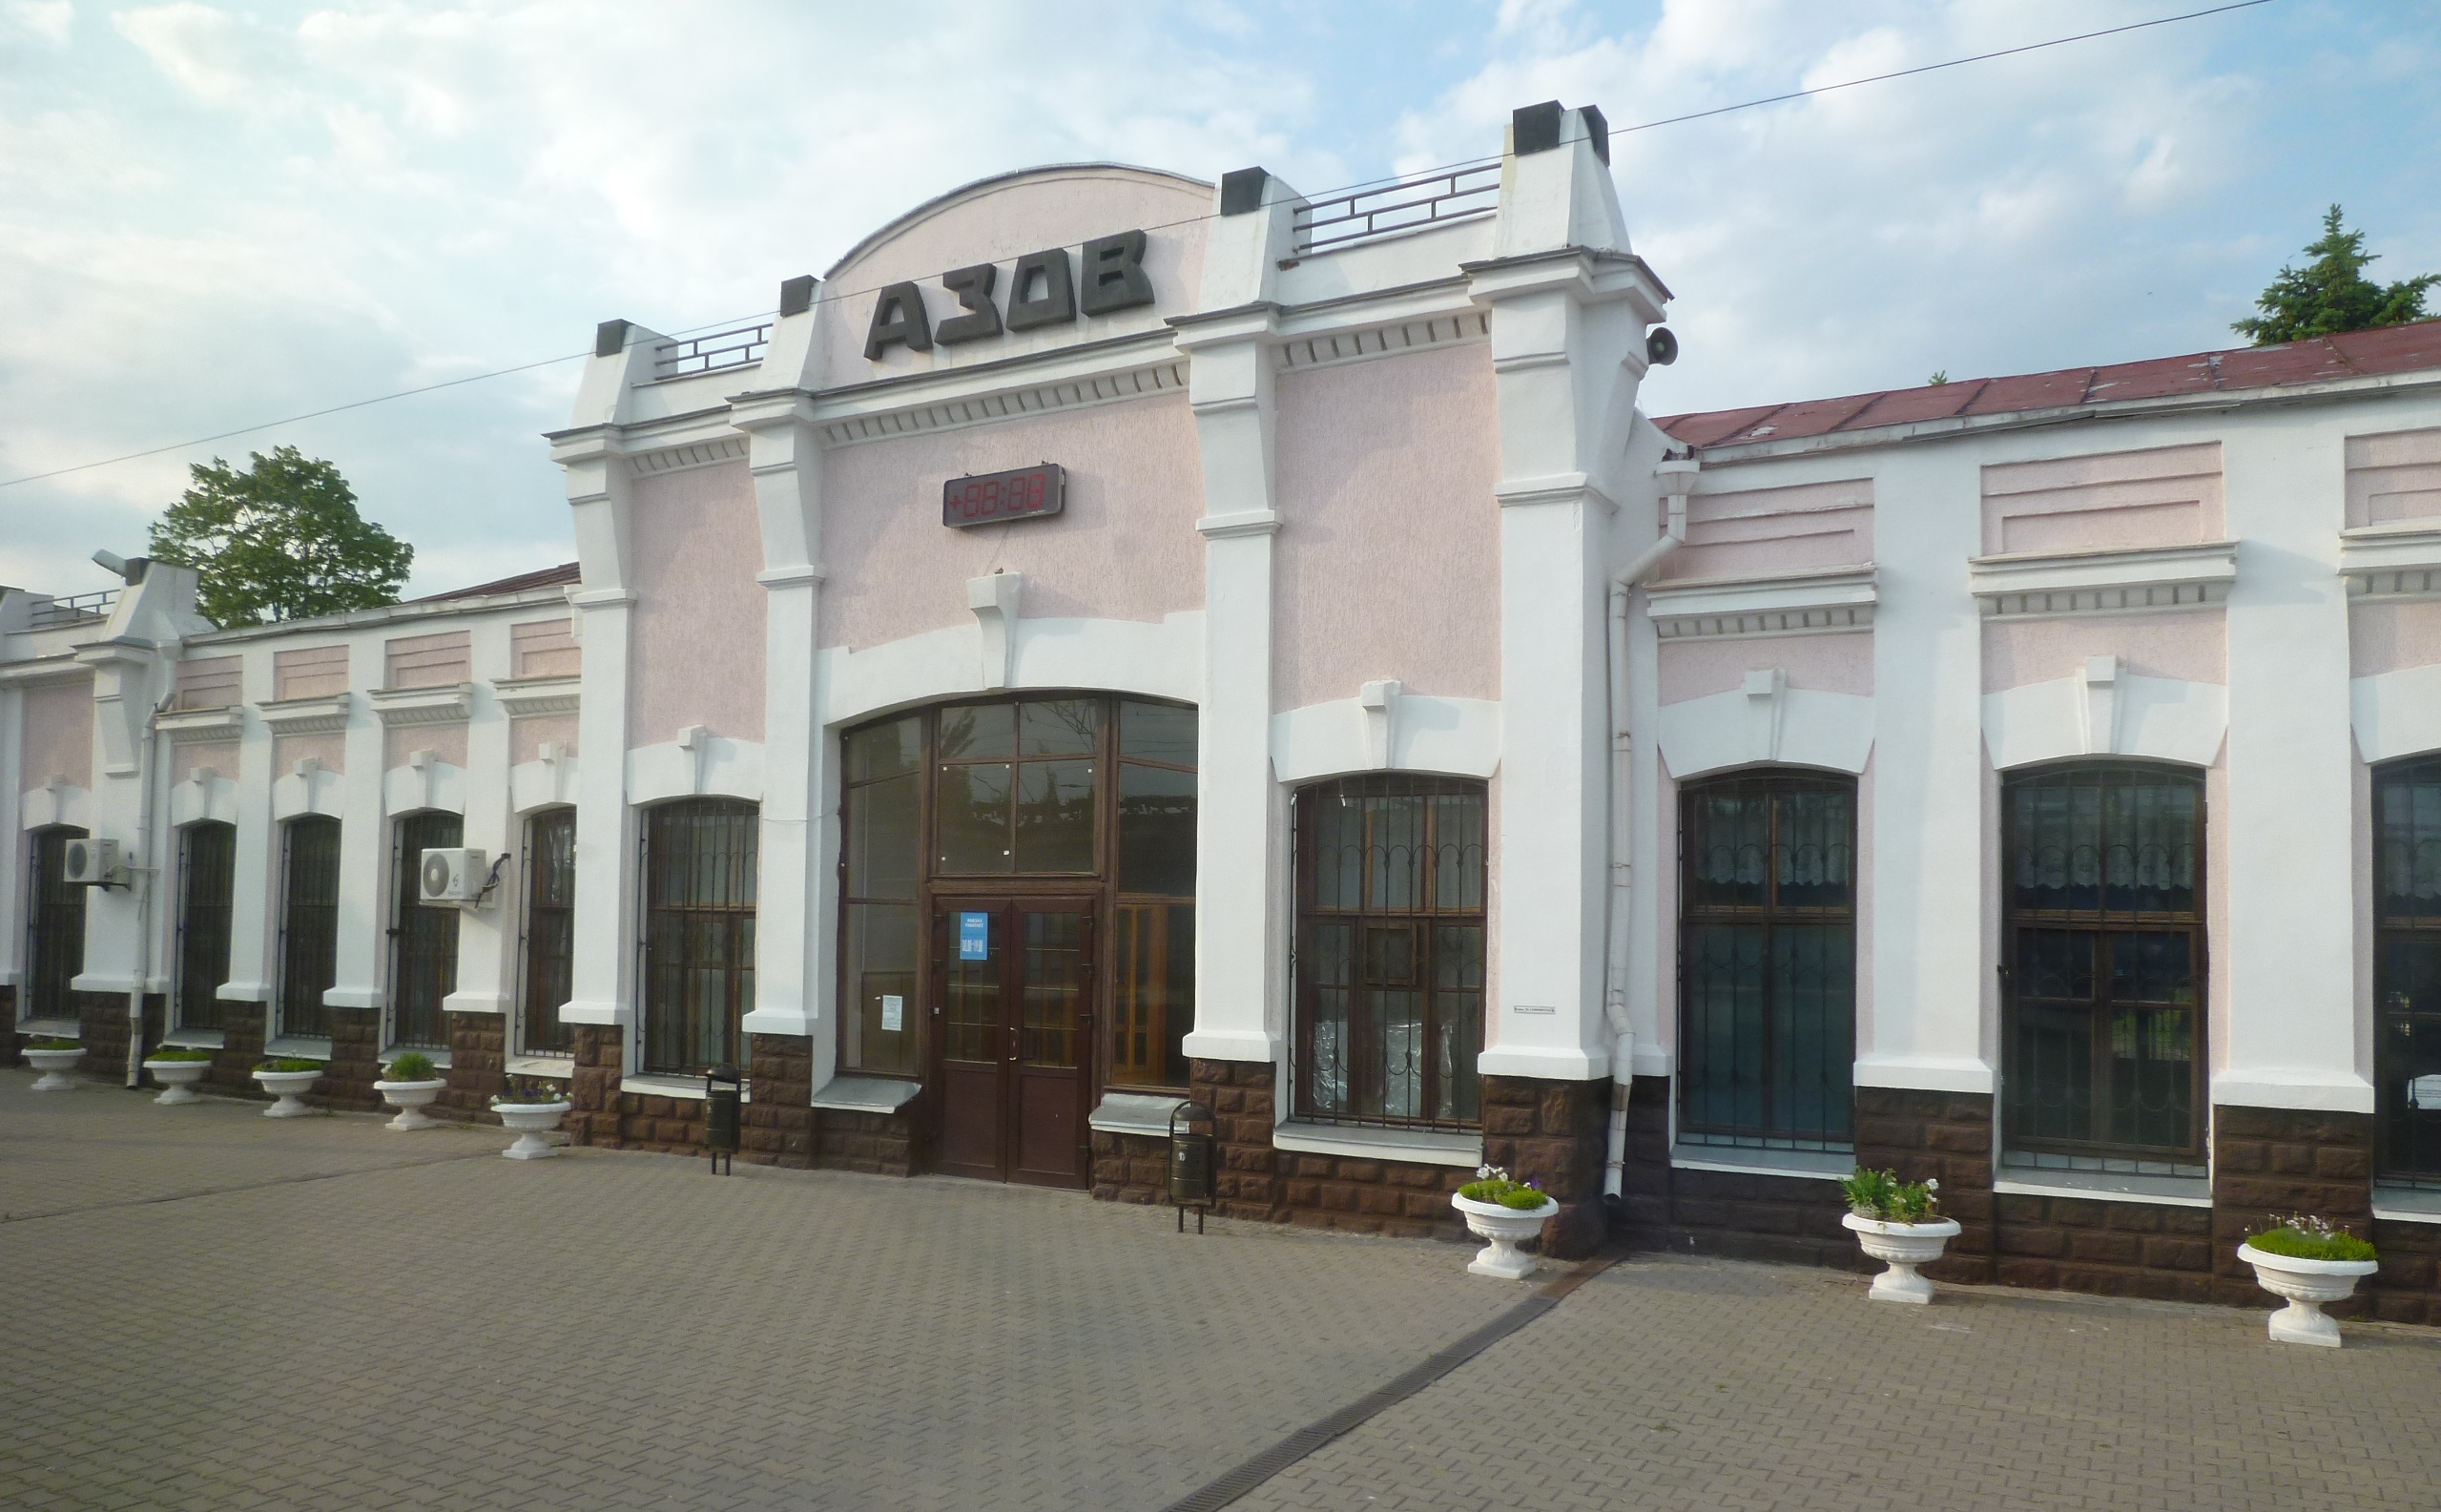 Вокзал в Азове. Современное фото